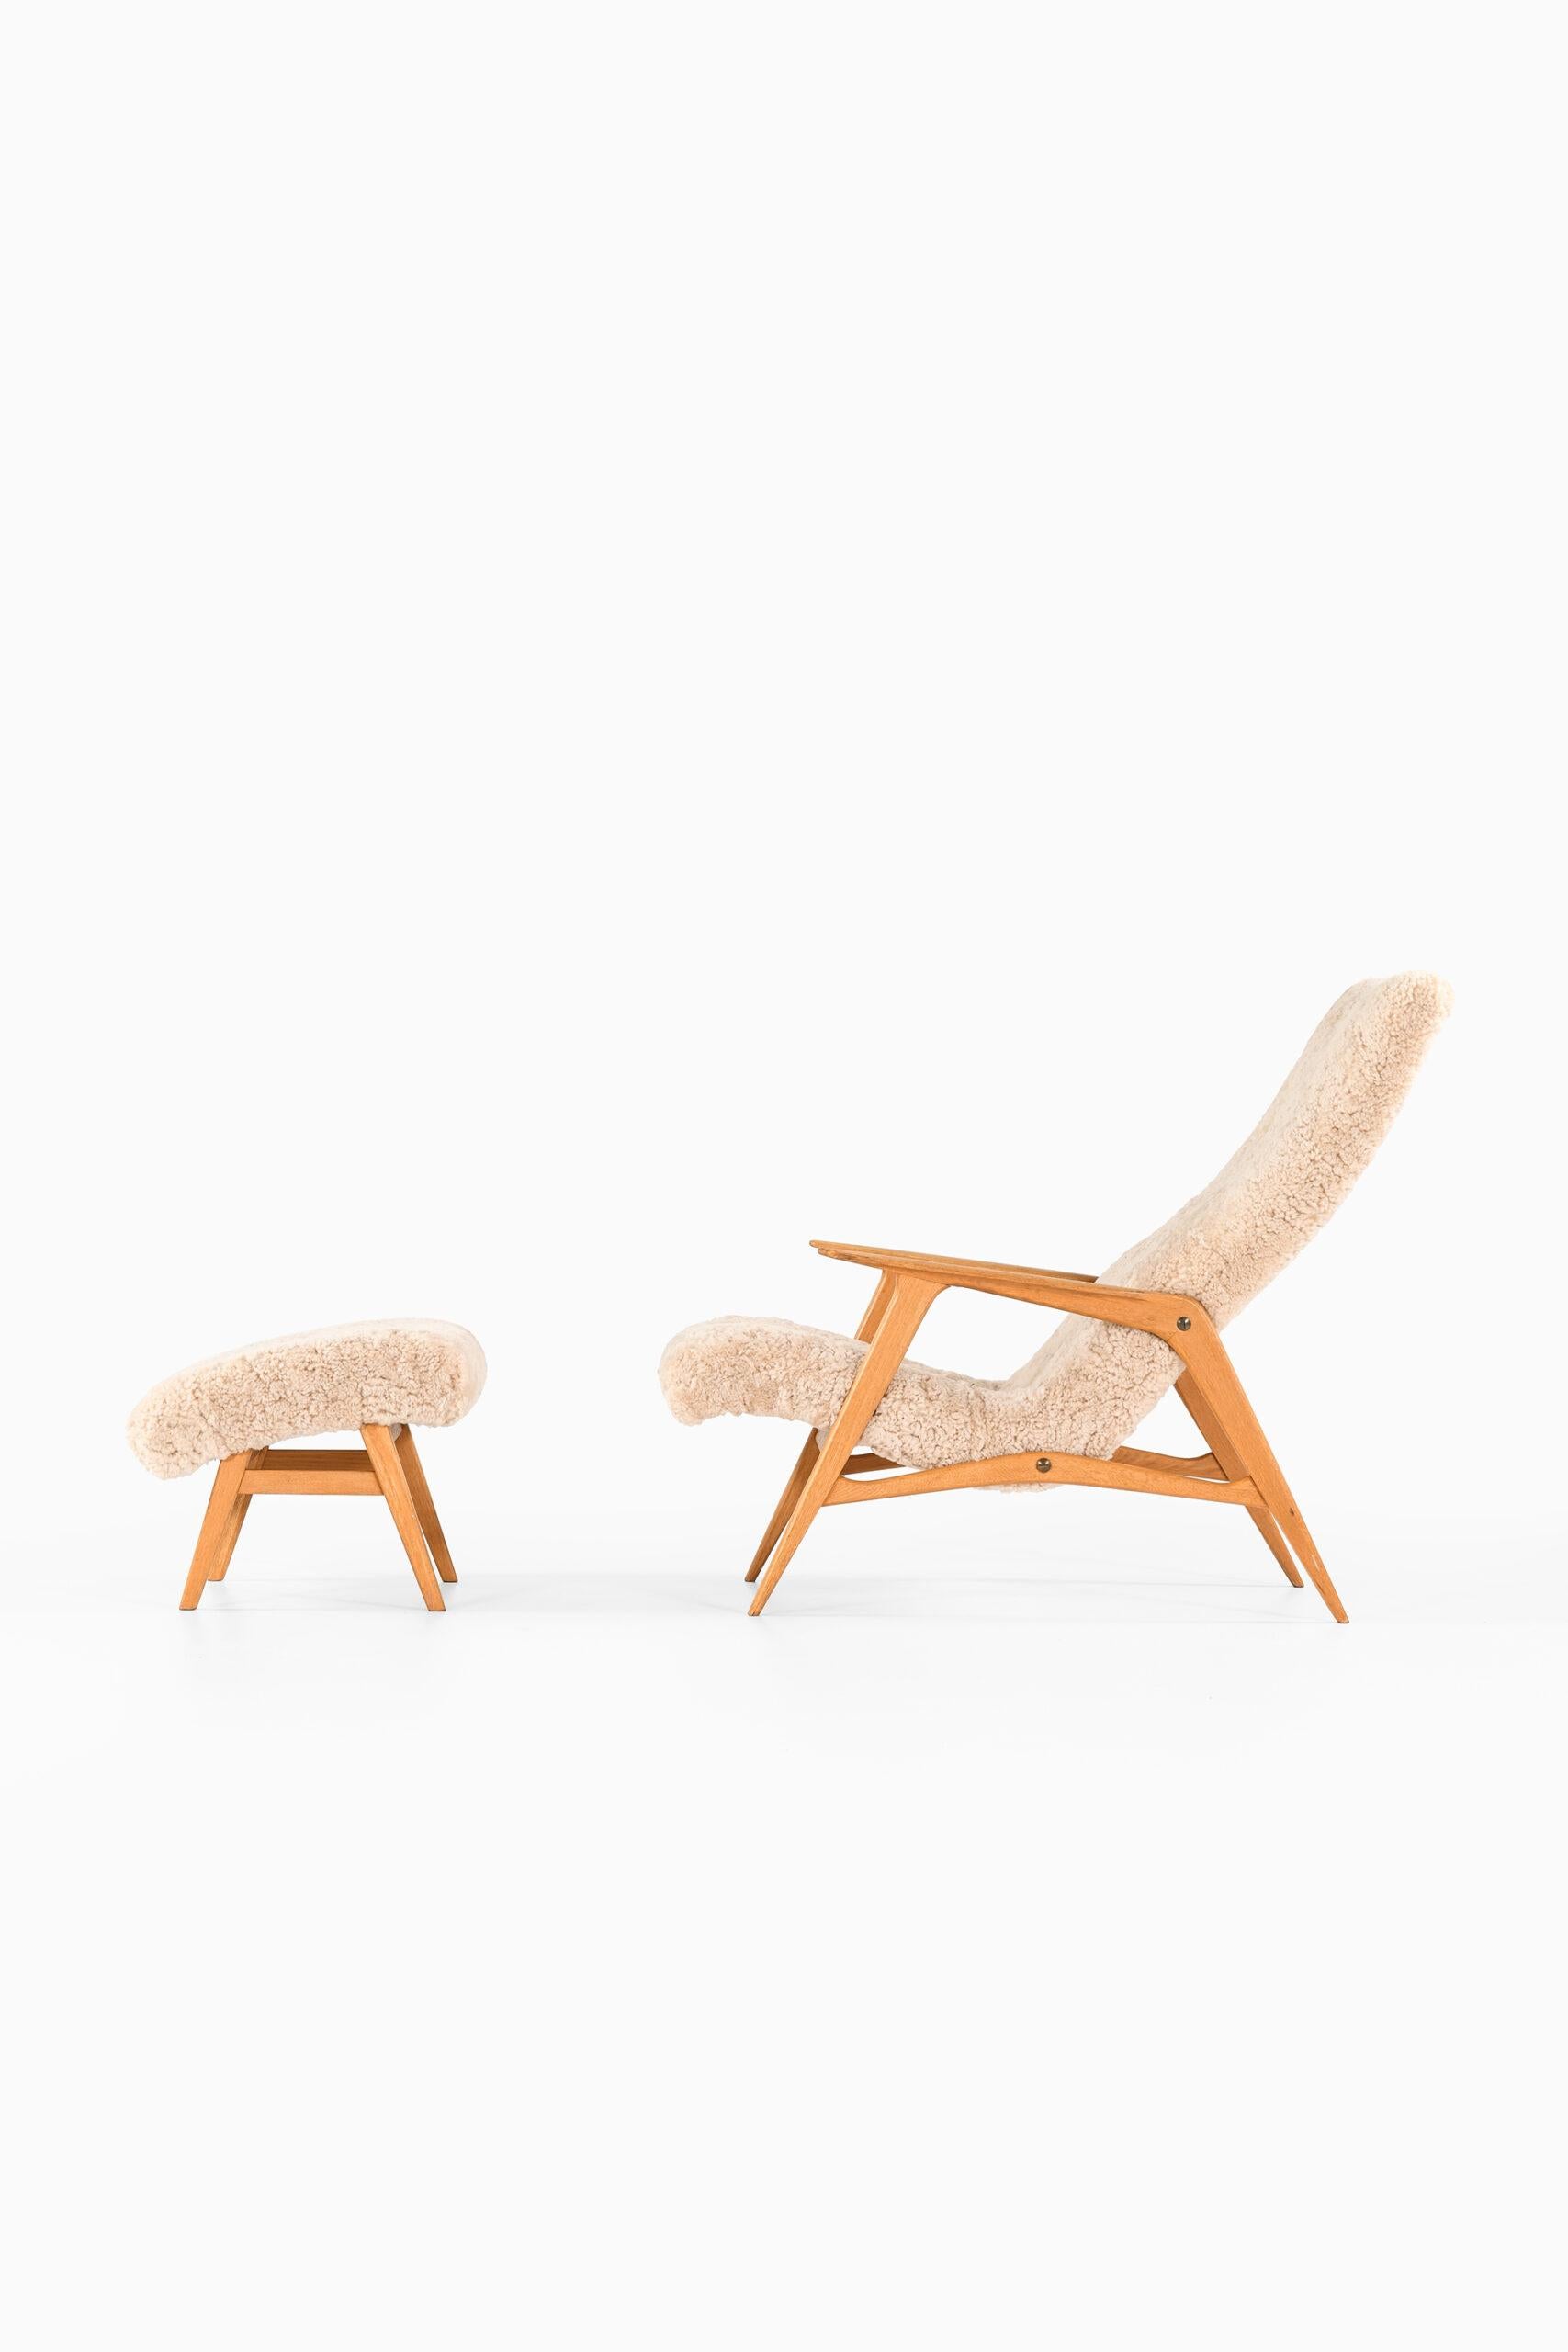 Rare fauteuil avec tabouret modèle Siesta par un designer inconnu. Produit par JIO Möbler en Suède.
Dimensions (L x P x H) : 63,5 x 115 x 93 cm, SH : 33 cm.
Dimensions du tabouret (L x P x H) : 58 x 50 x 39 cm.